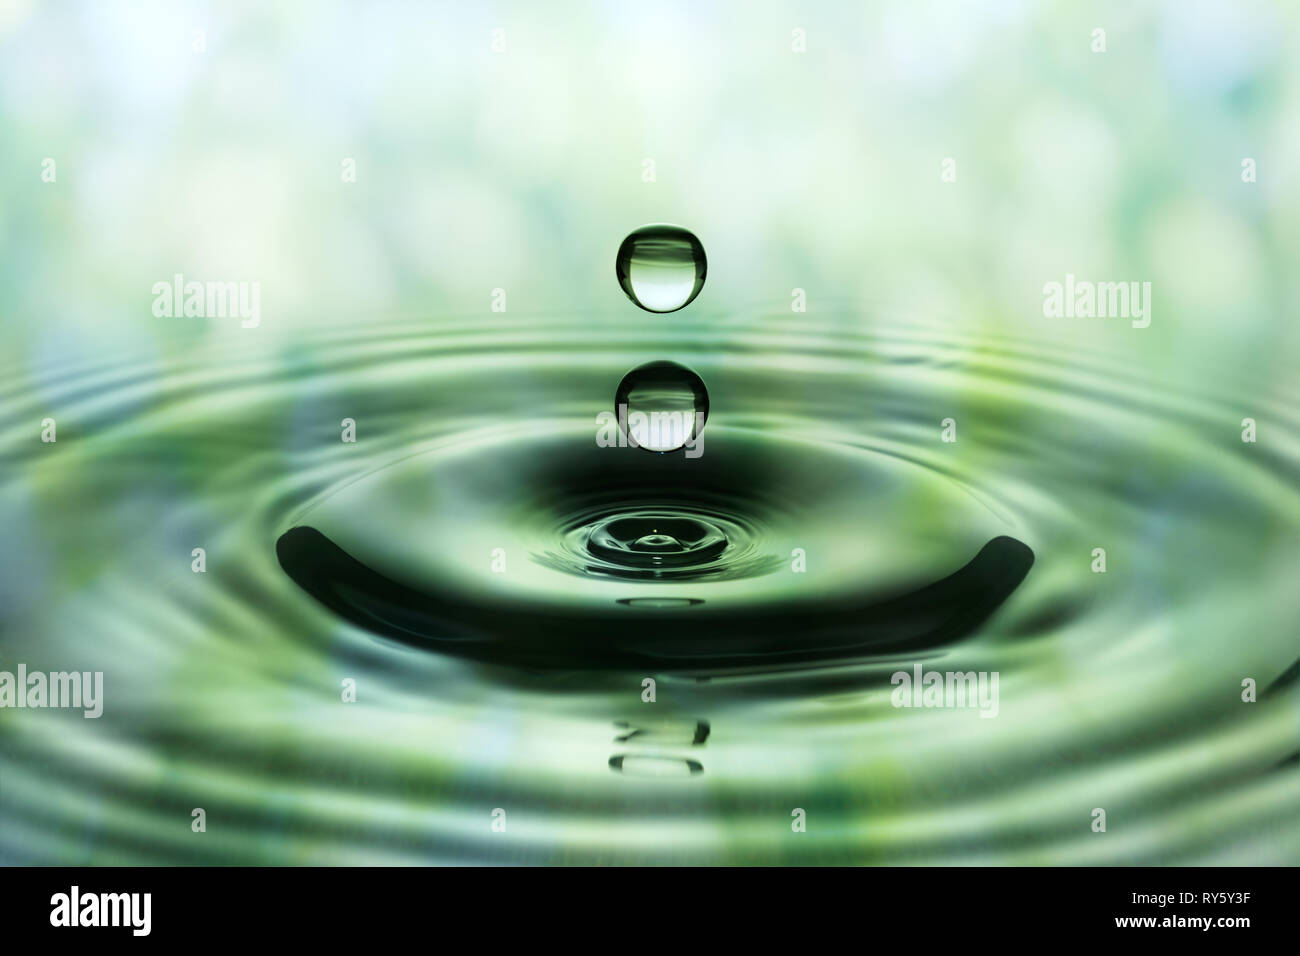 Gocce di pioggia che cade su una superficie liscia della superficie dell'acqua. Verde modello sfocata in background. Foto Stock